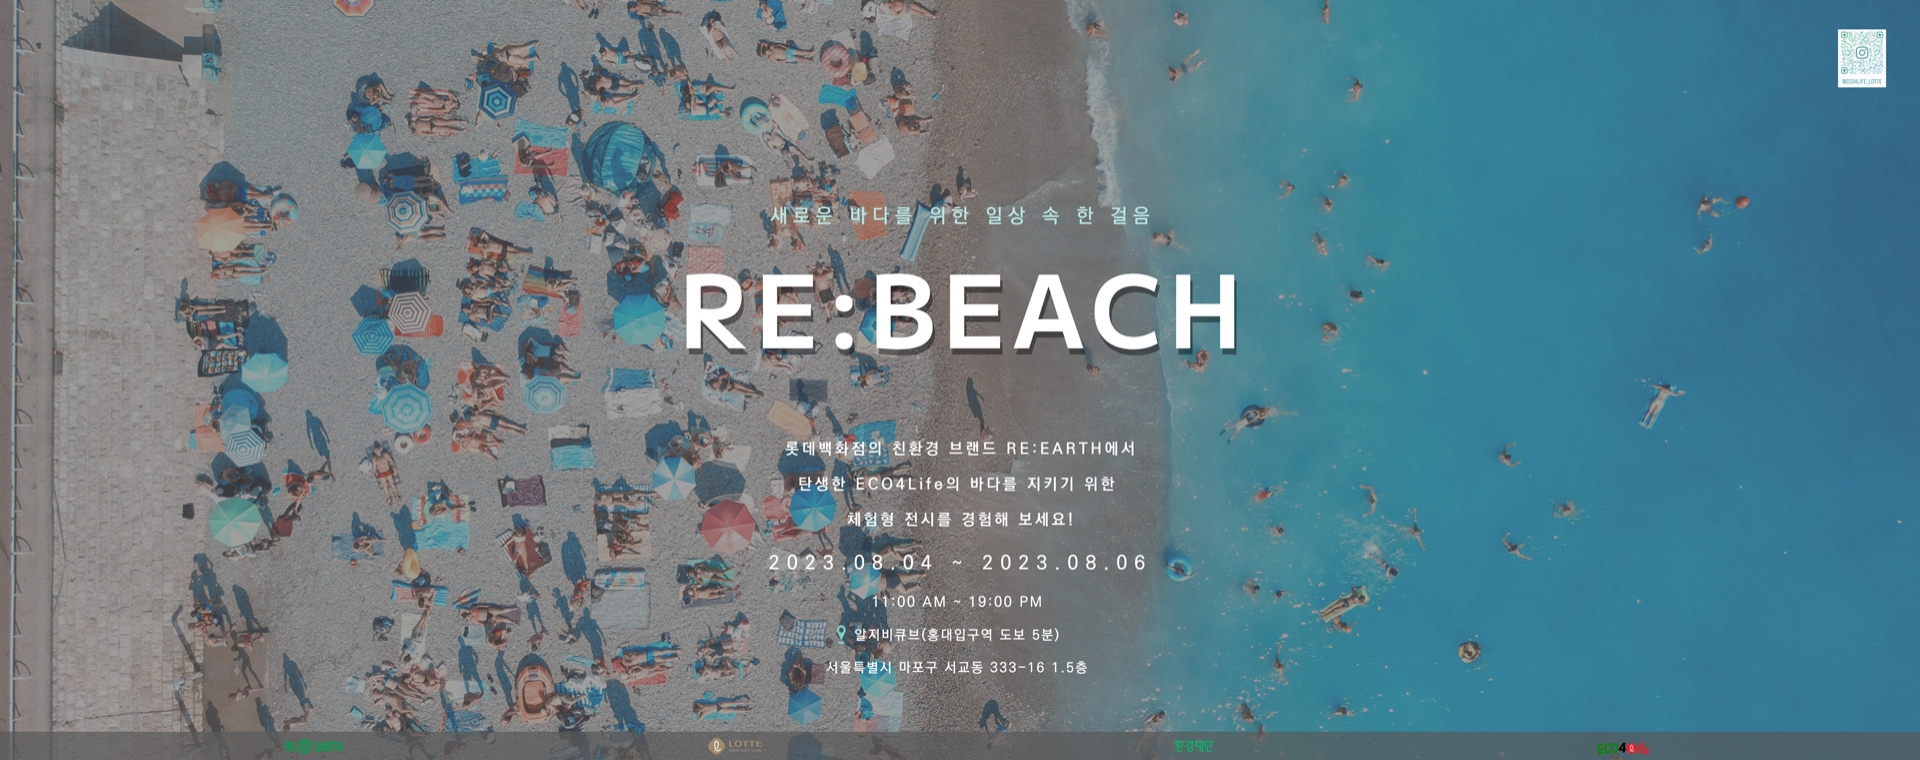 RE:BEACH